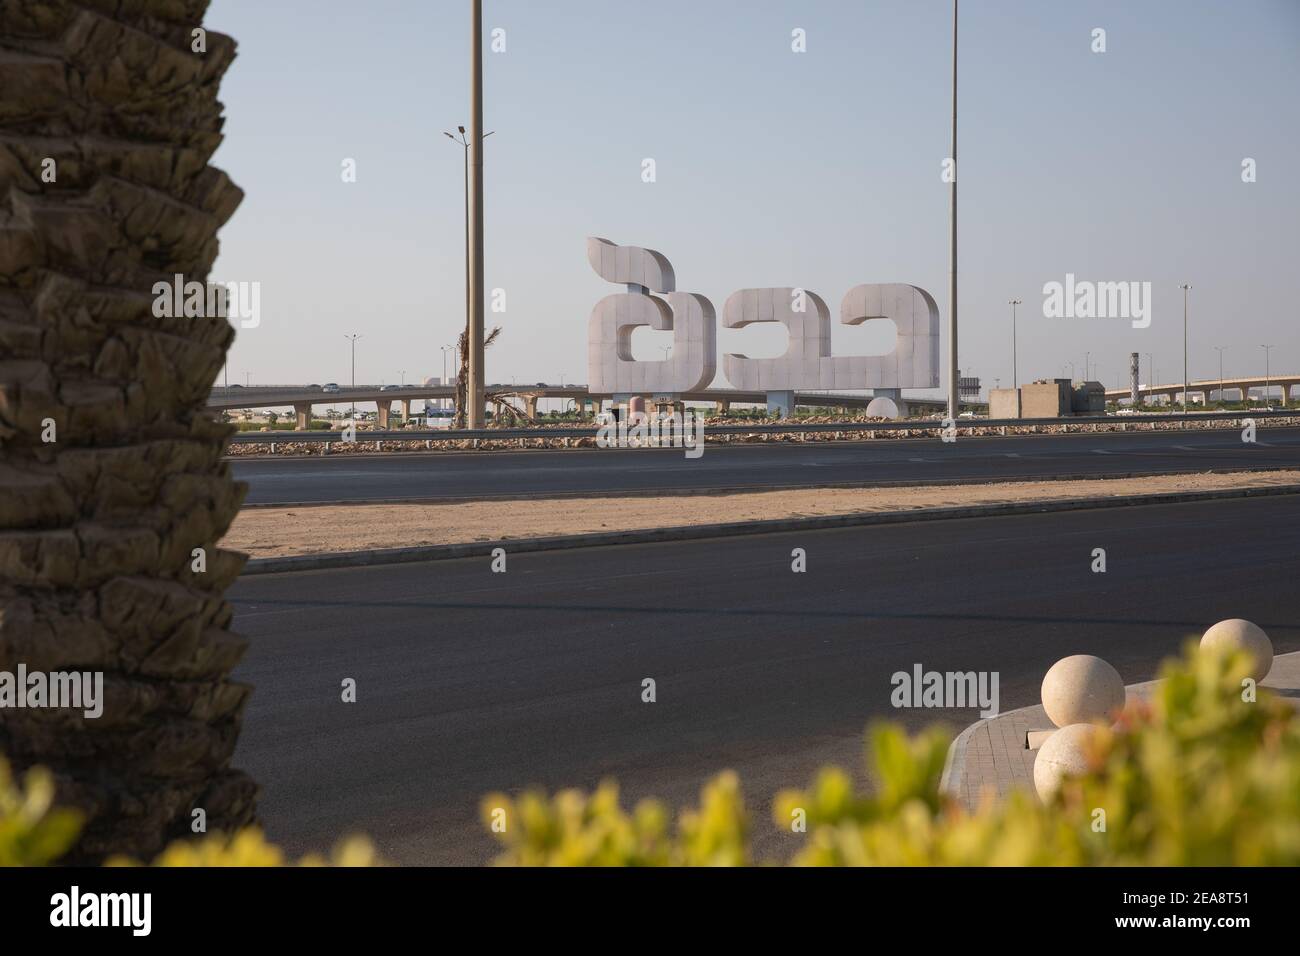 Jeddah name monument in Airport road, Jeddah, Saudi Arabia, September 2019 Stock Photo